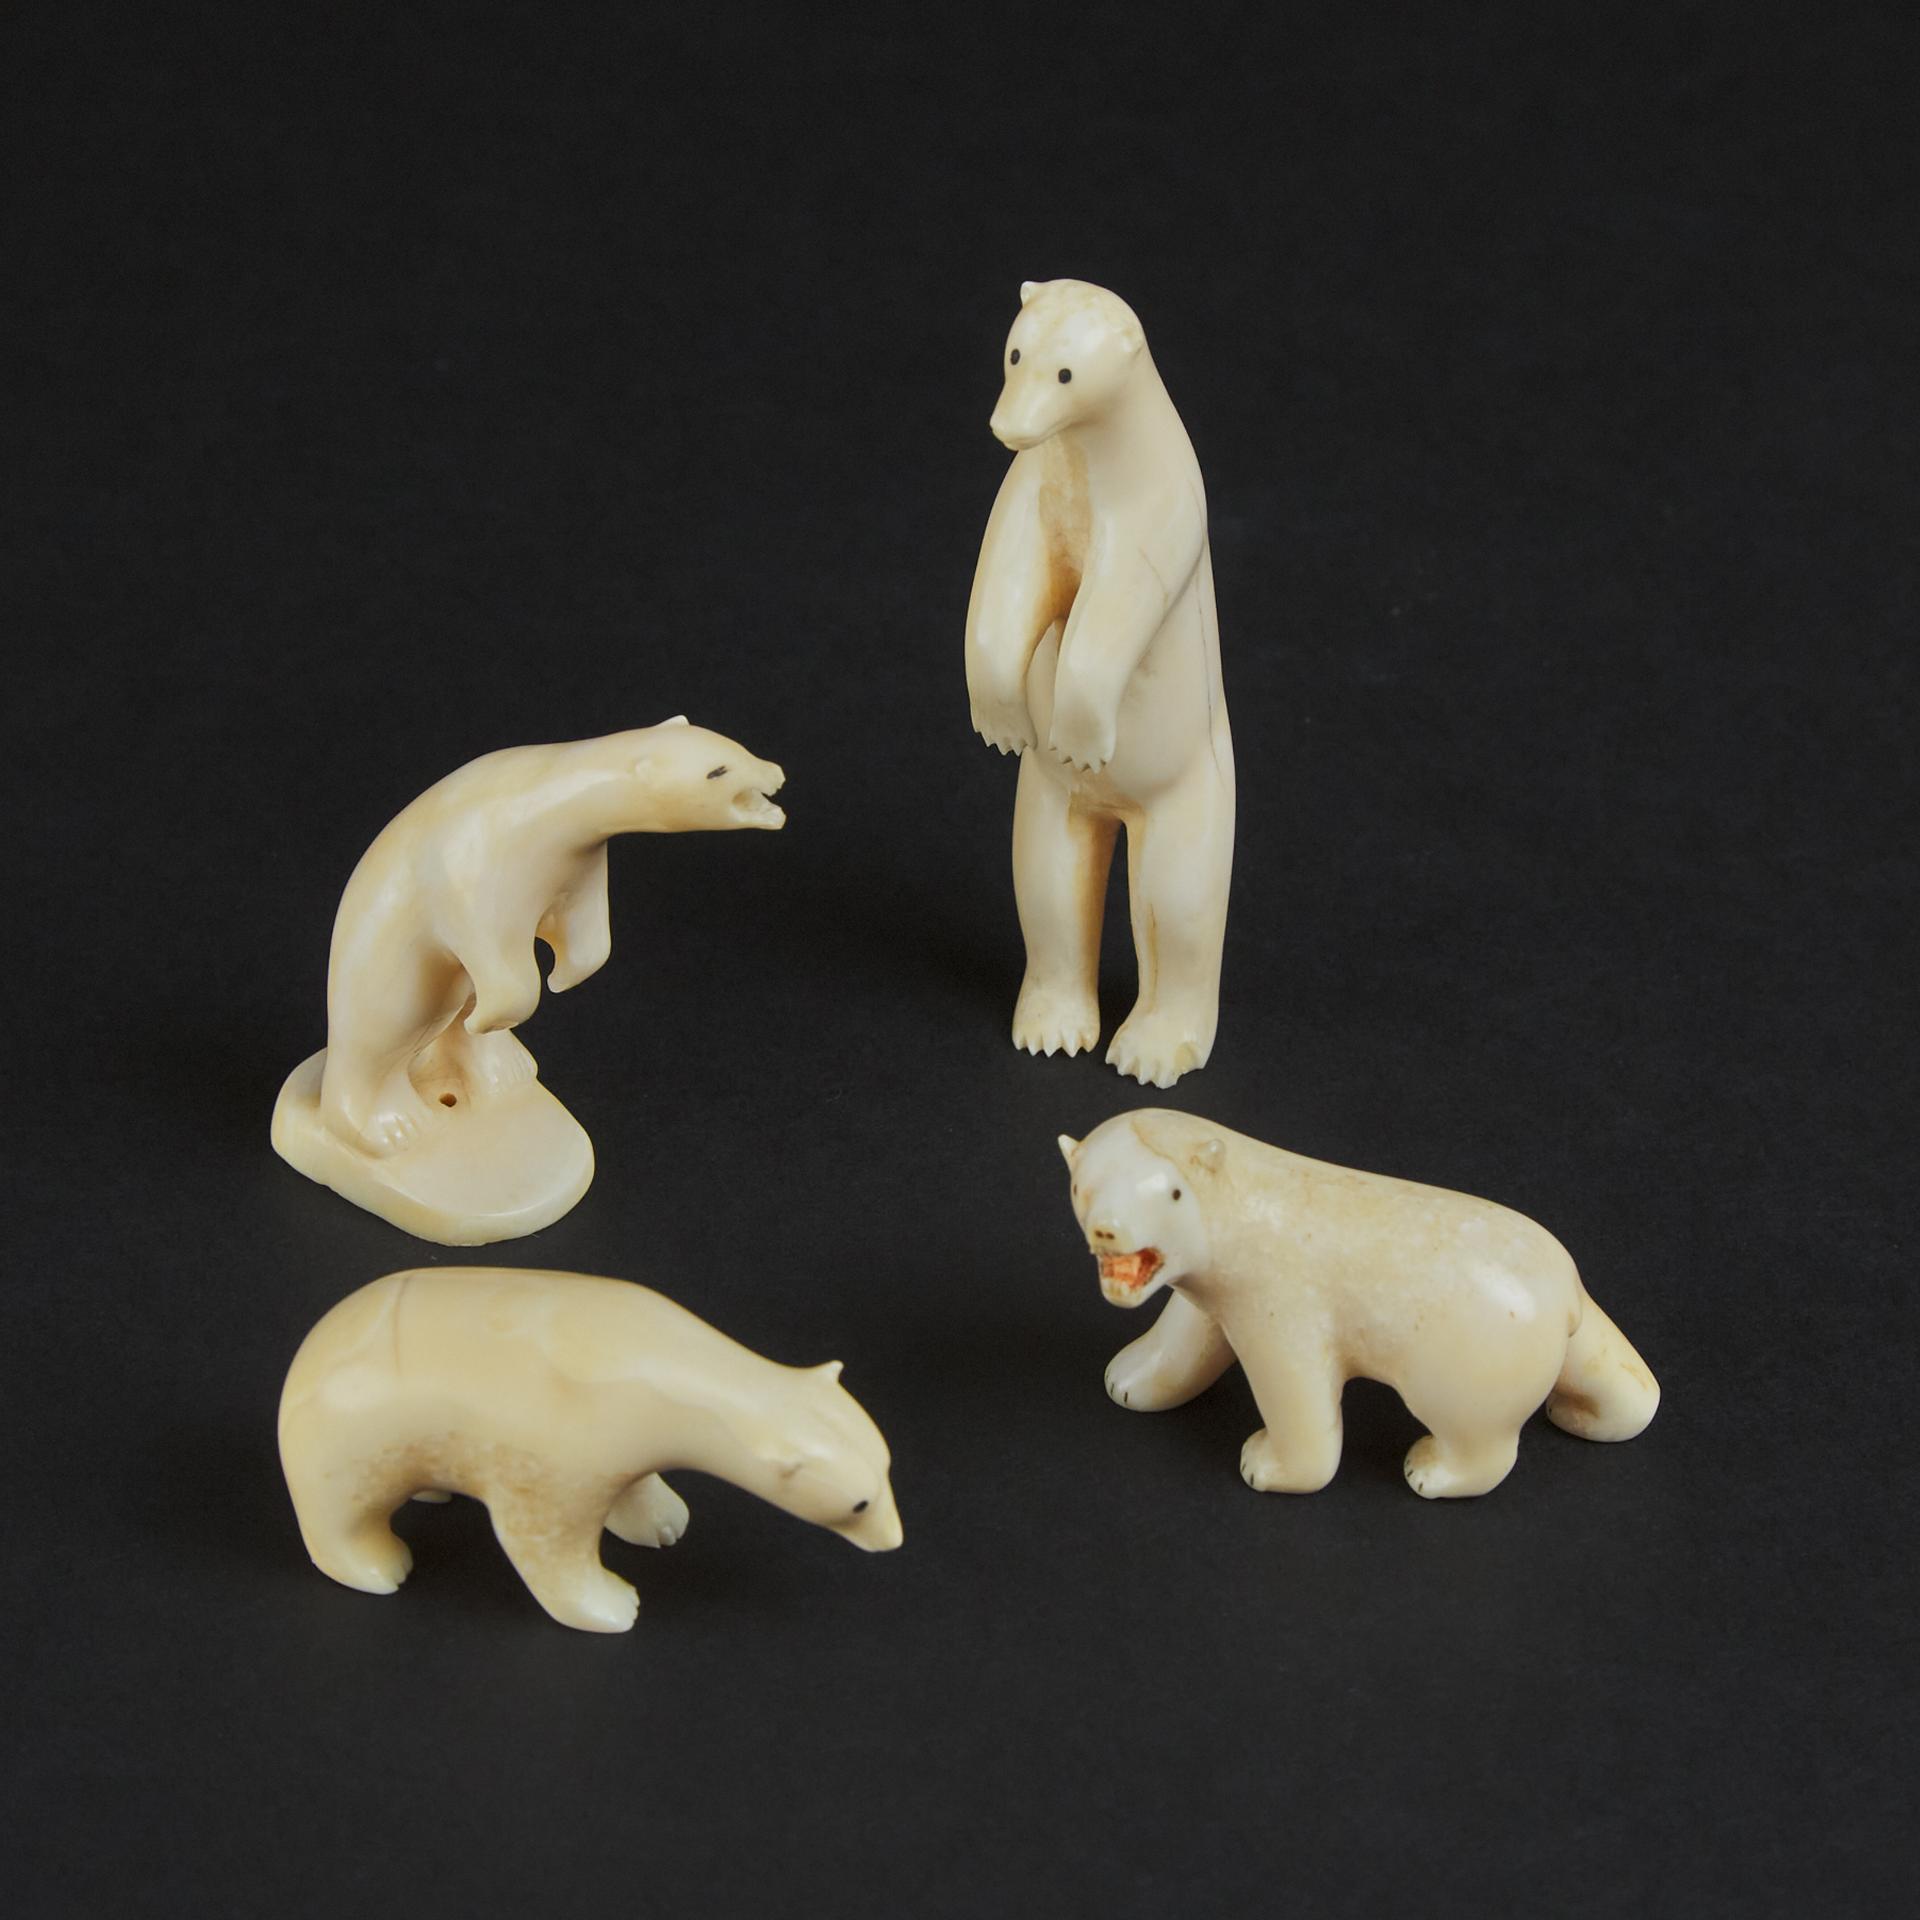 Josephee Kopalie (1933) - Four Bears